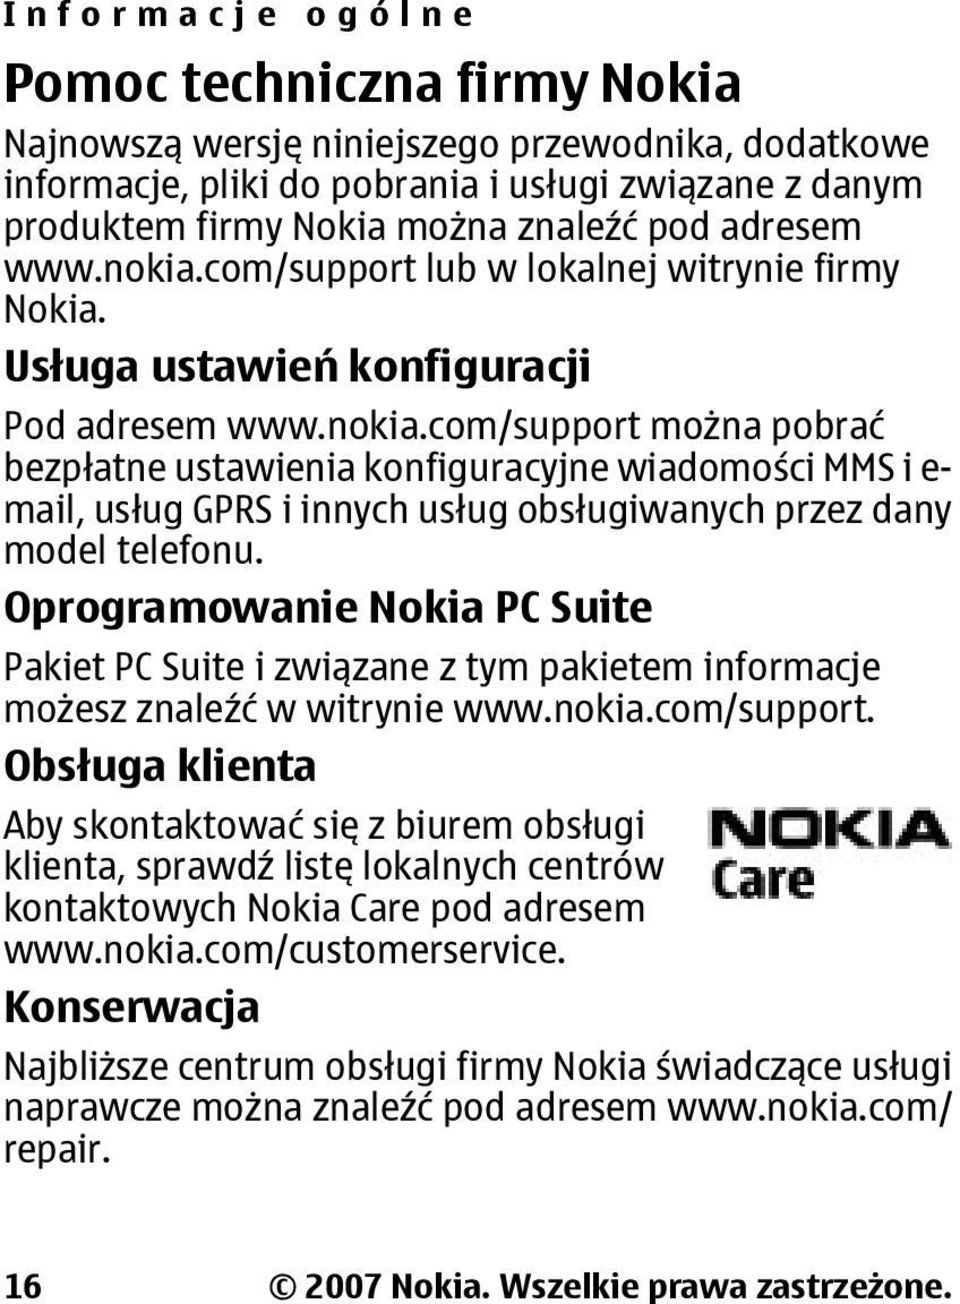 Oprogramowanie Nokia PC Suite Pakiet PC Suite i związane z tym pakietem informacje możesz znaleźć w witrynie www.nokia.com/support.